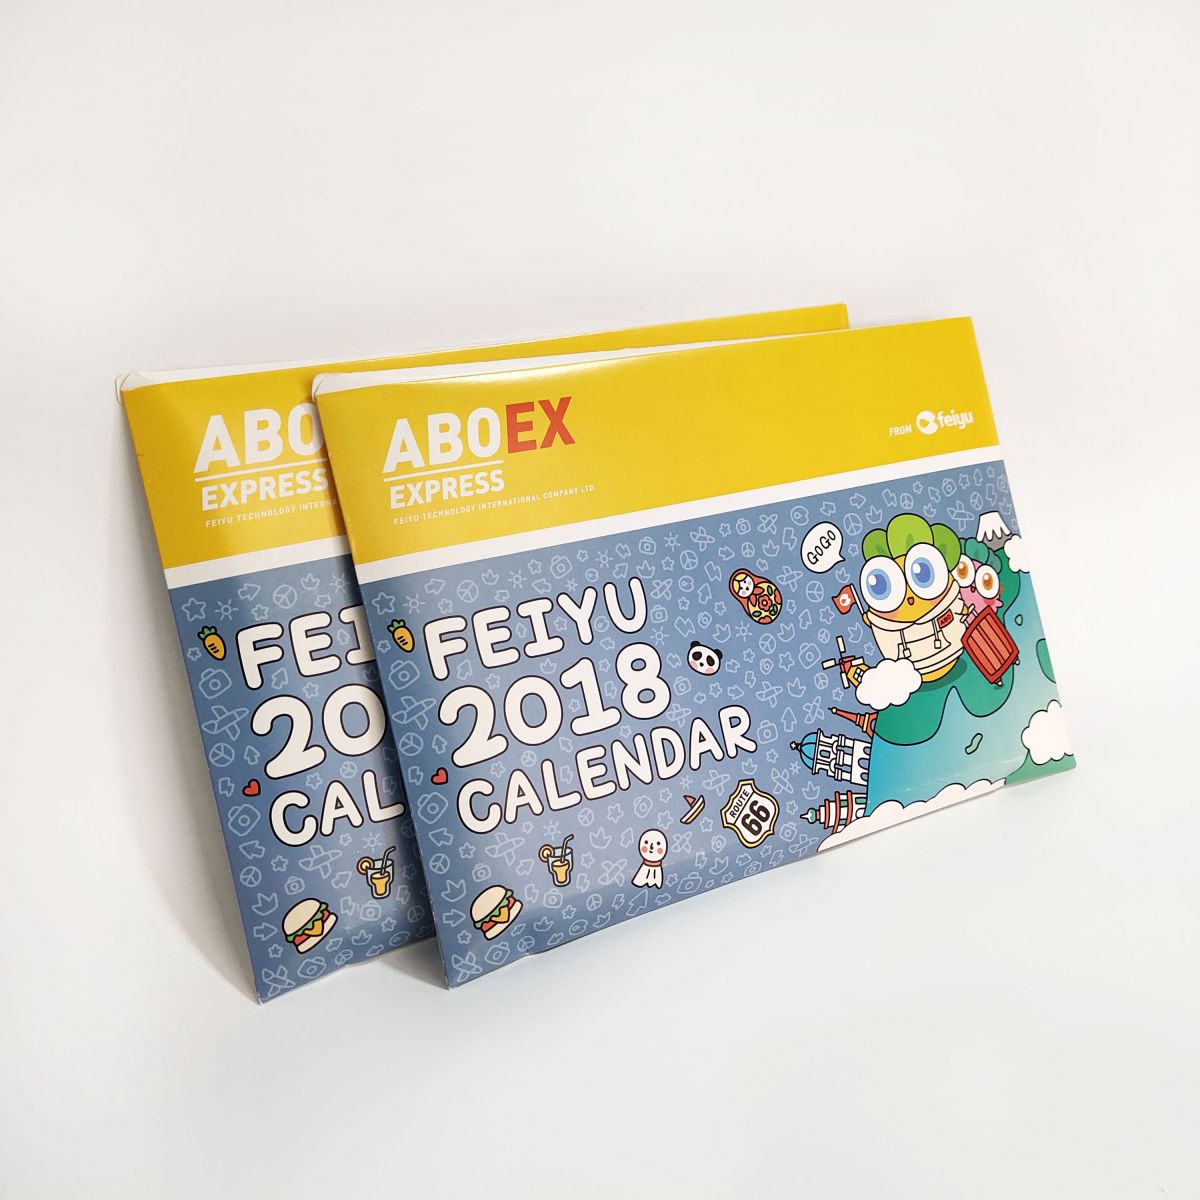 Printed Desk Calendar and Customized Company Calendar Bavora